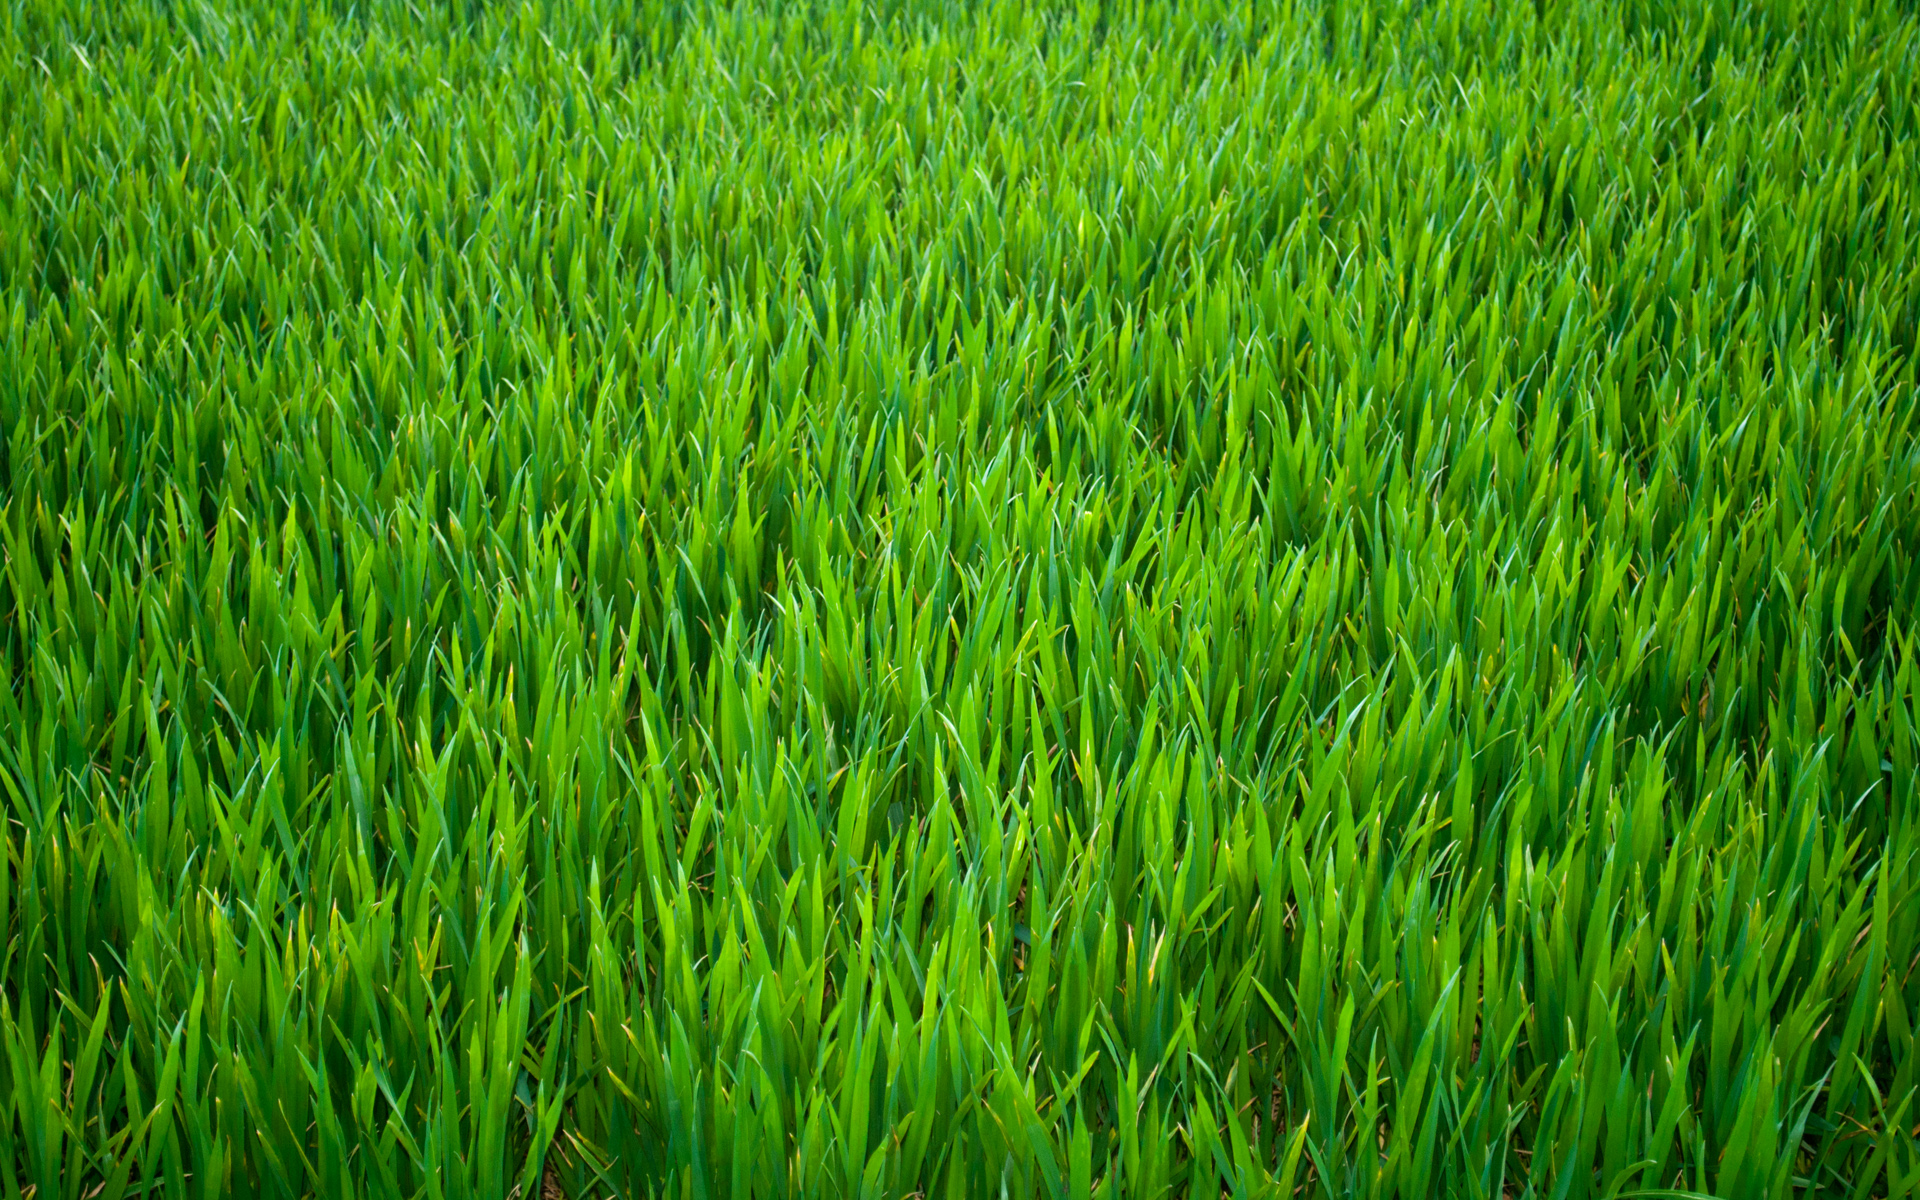 r116-grass11.jpg